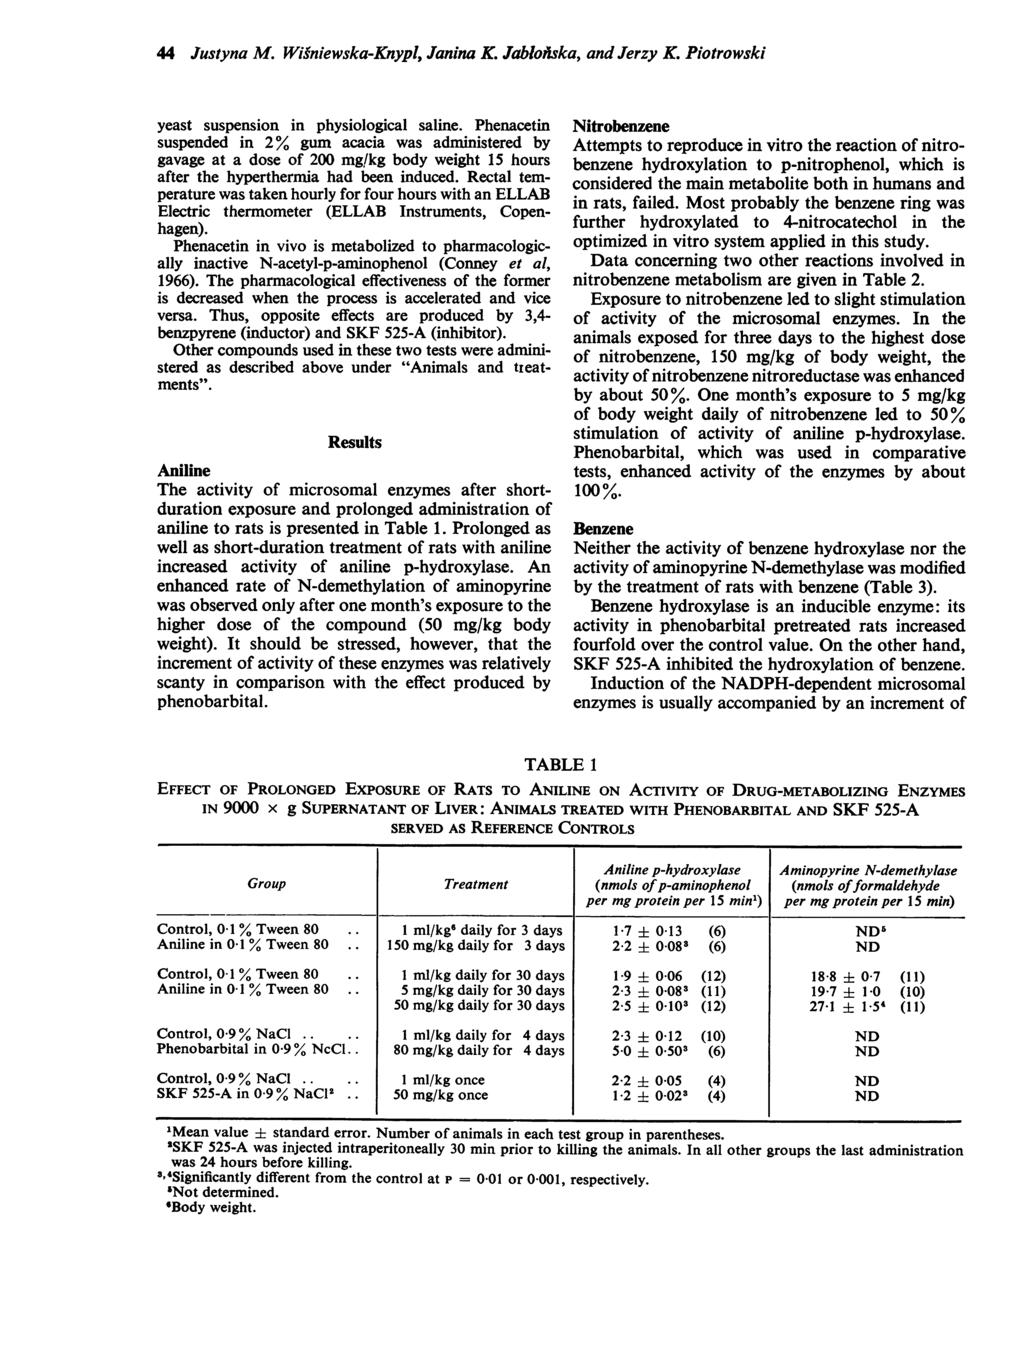 44 Justyna M. Wisniewska-Knypl, Janina K. Jablofiska, and Jerzy K. Piotrowski yeast suspension in physiological saline.